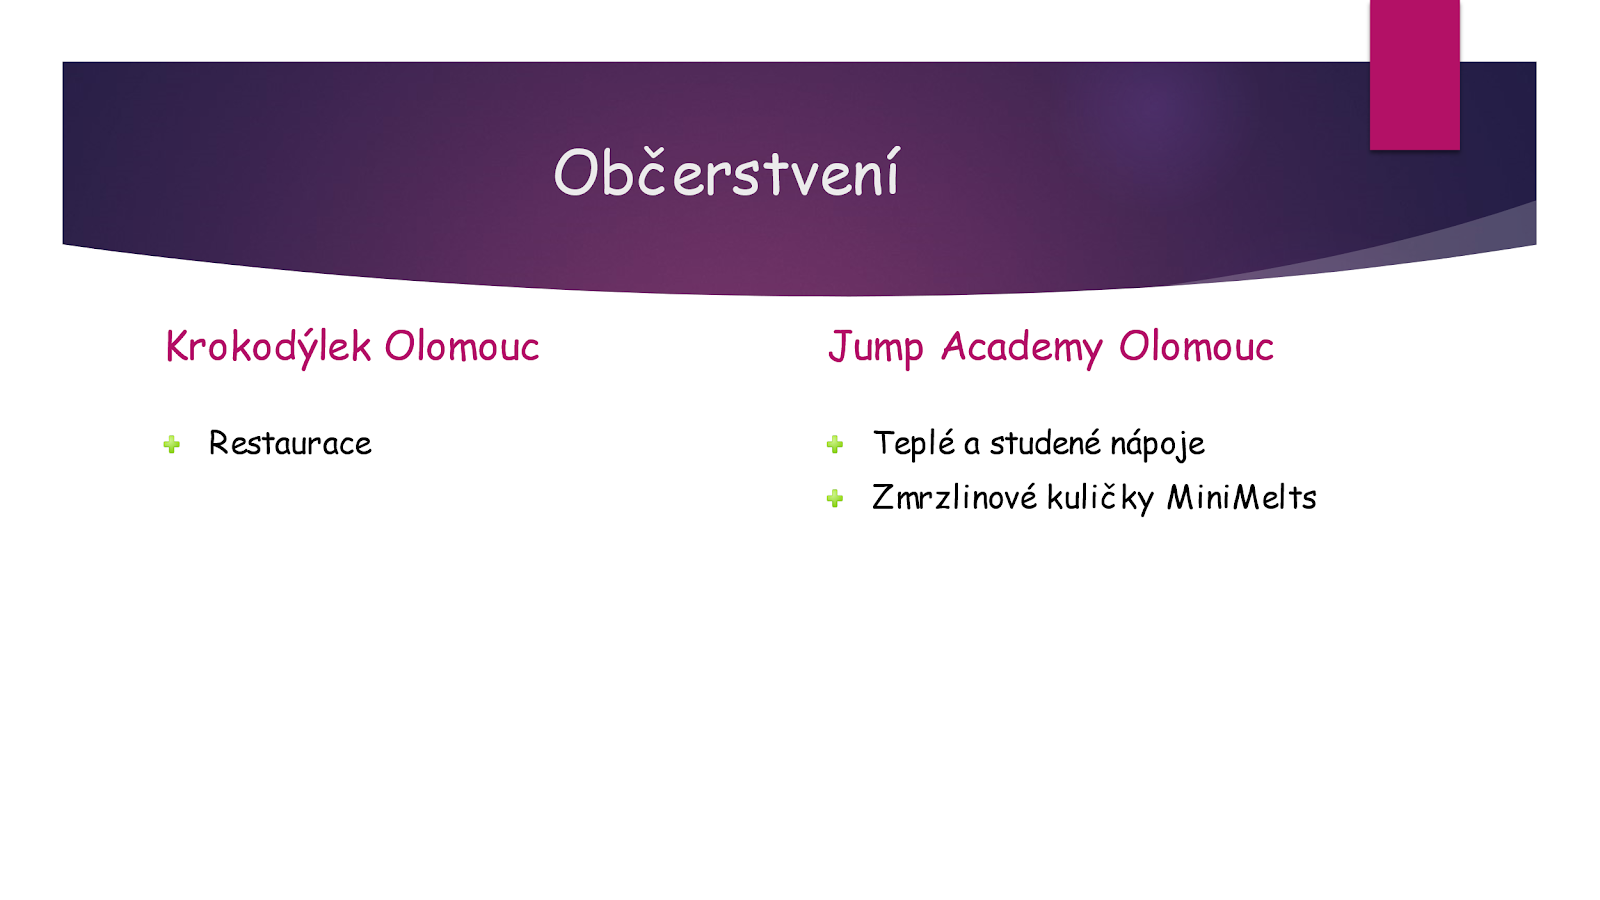 Občerstvení Krokodýlek Olomouc versus Jump Academy